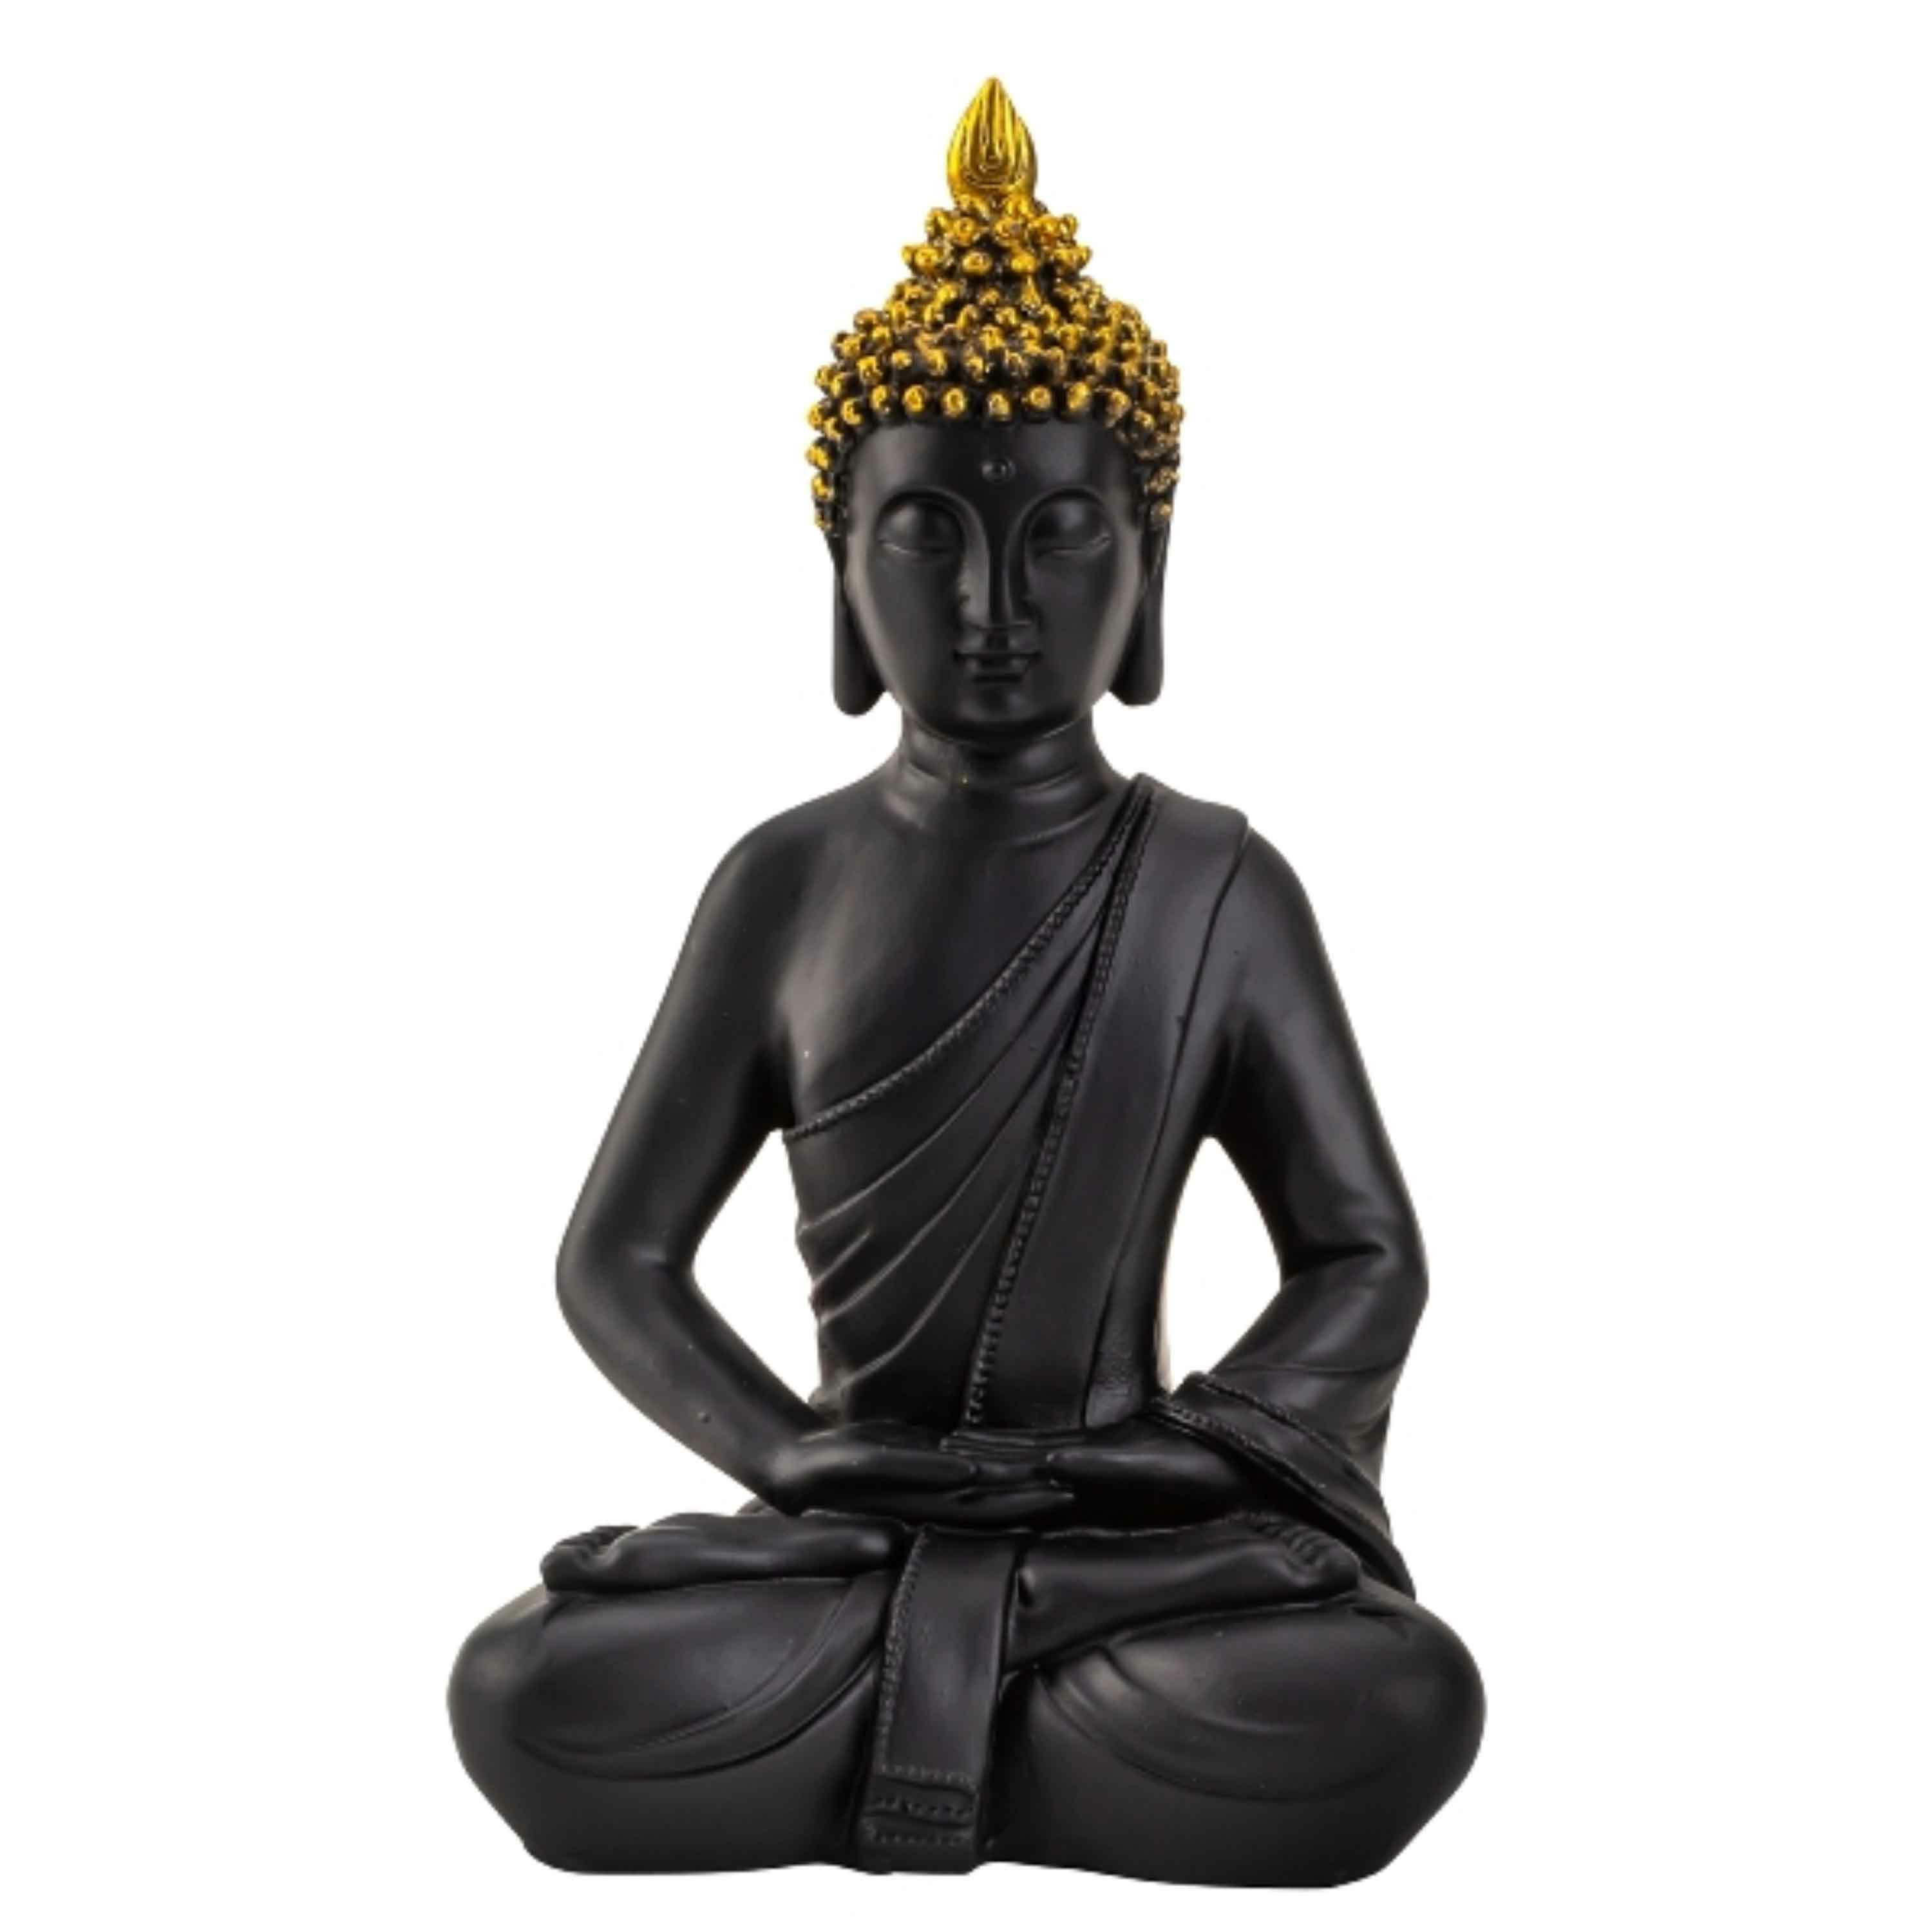 Merkloos Boeddha beeldje zittend - binnen/buiten - kunststeen - zwart/goud - 30 x 17 cm -